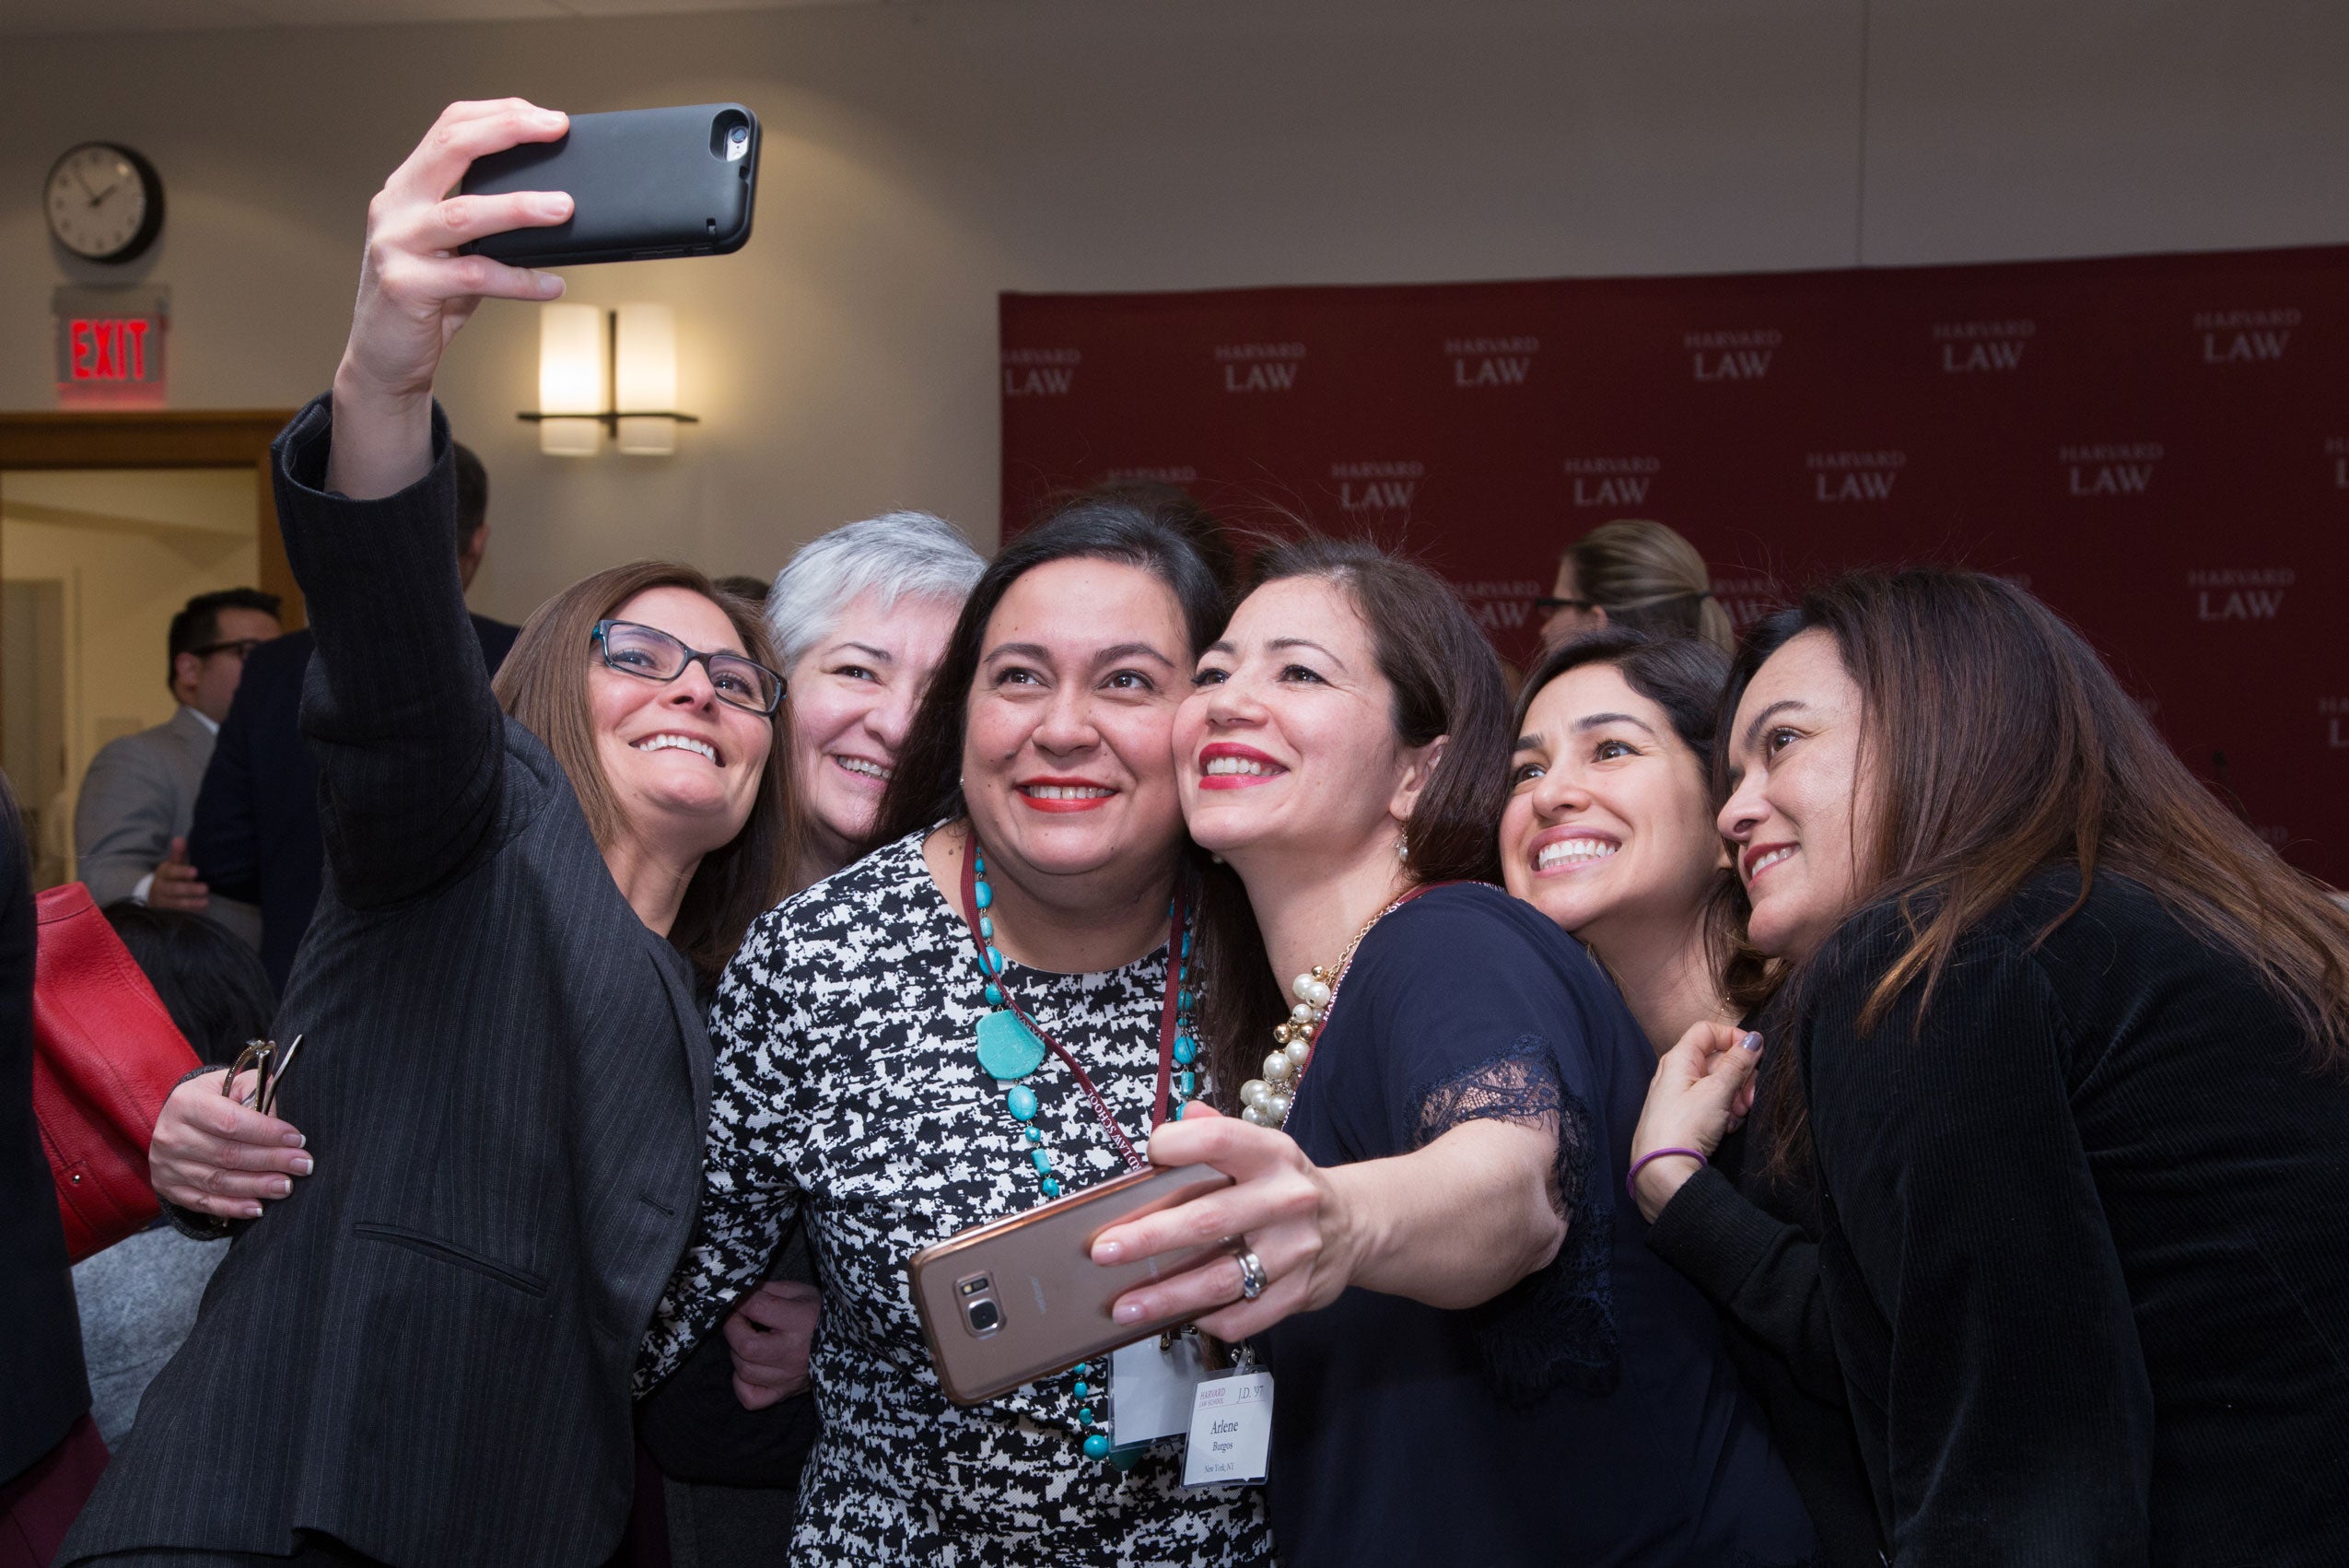 A group of women take a selfie